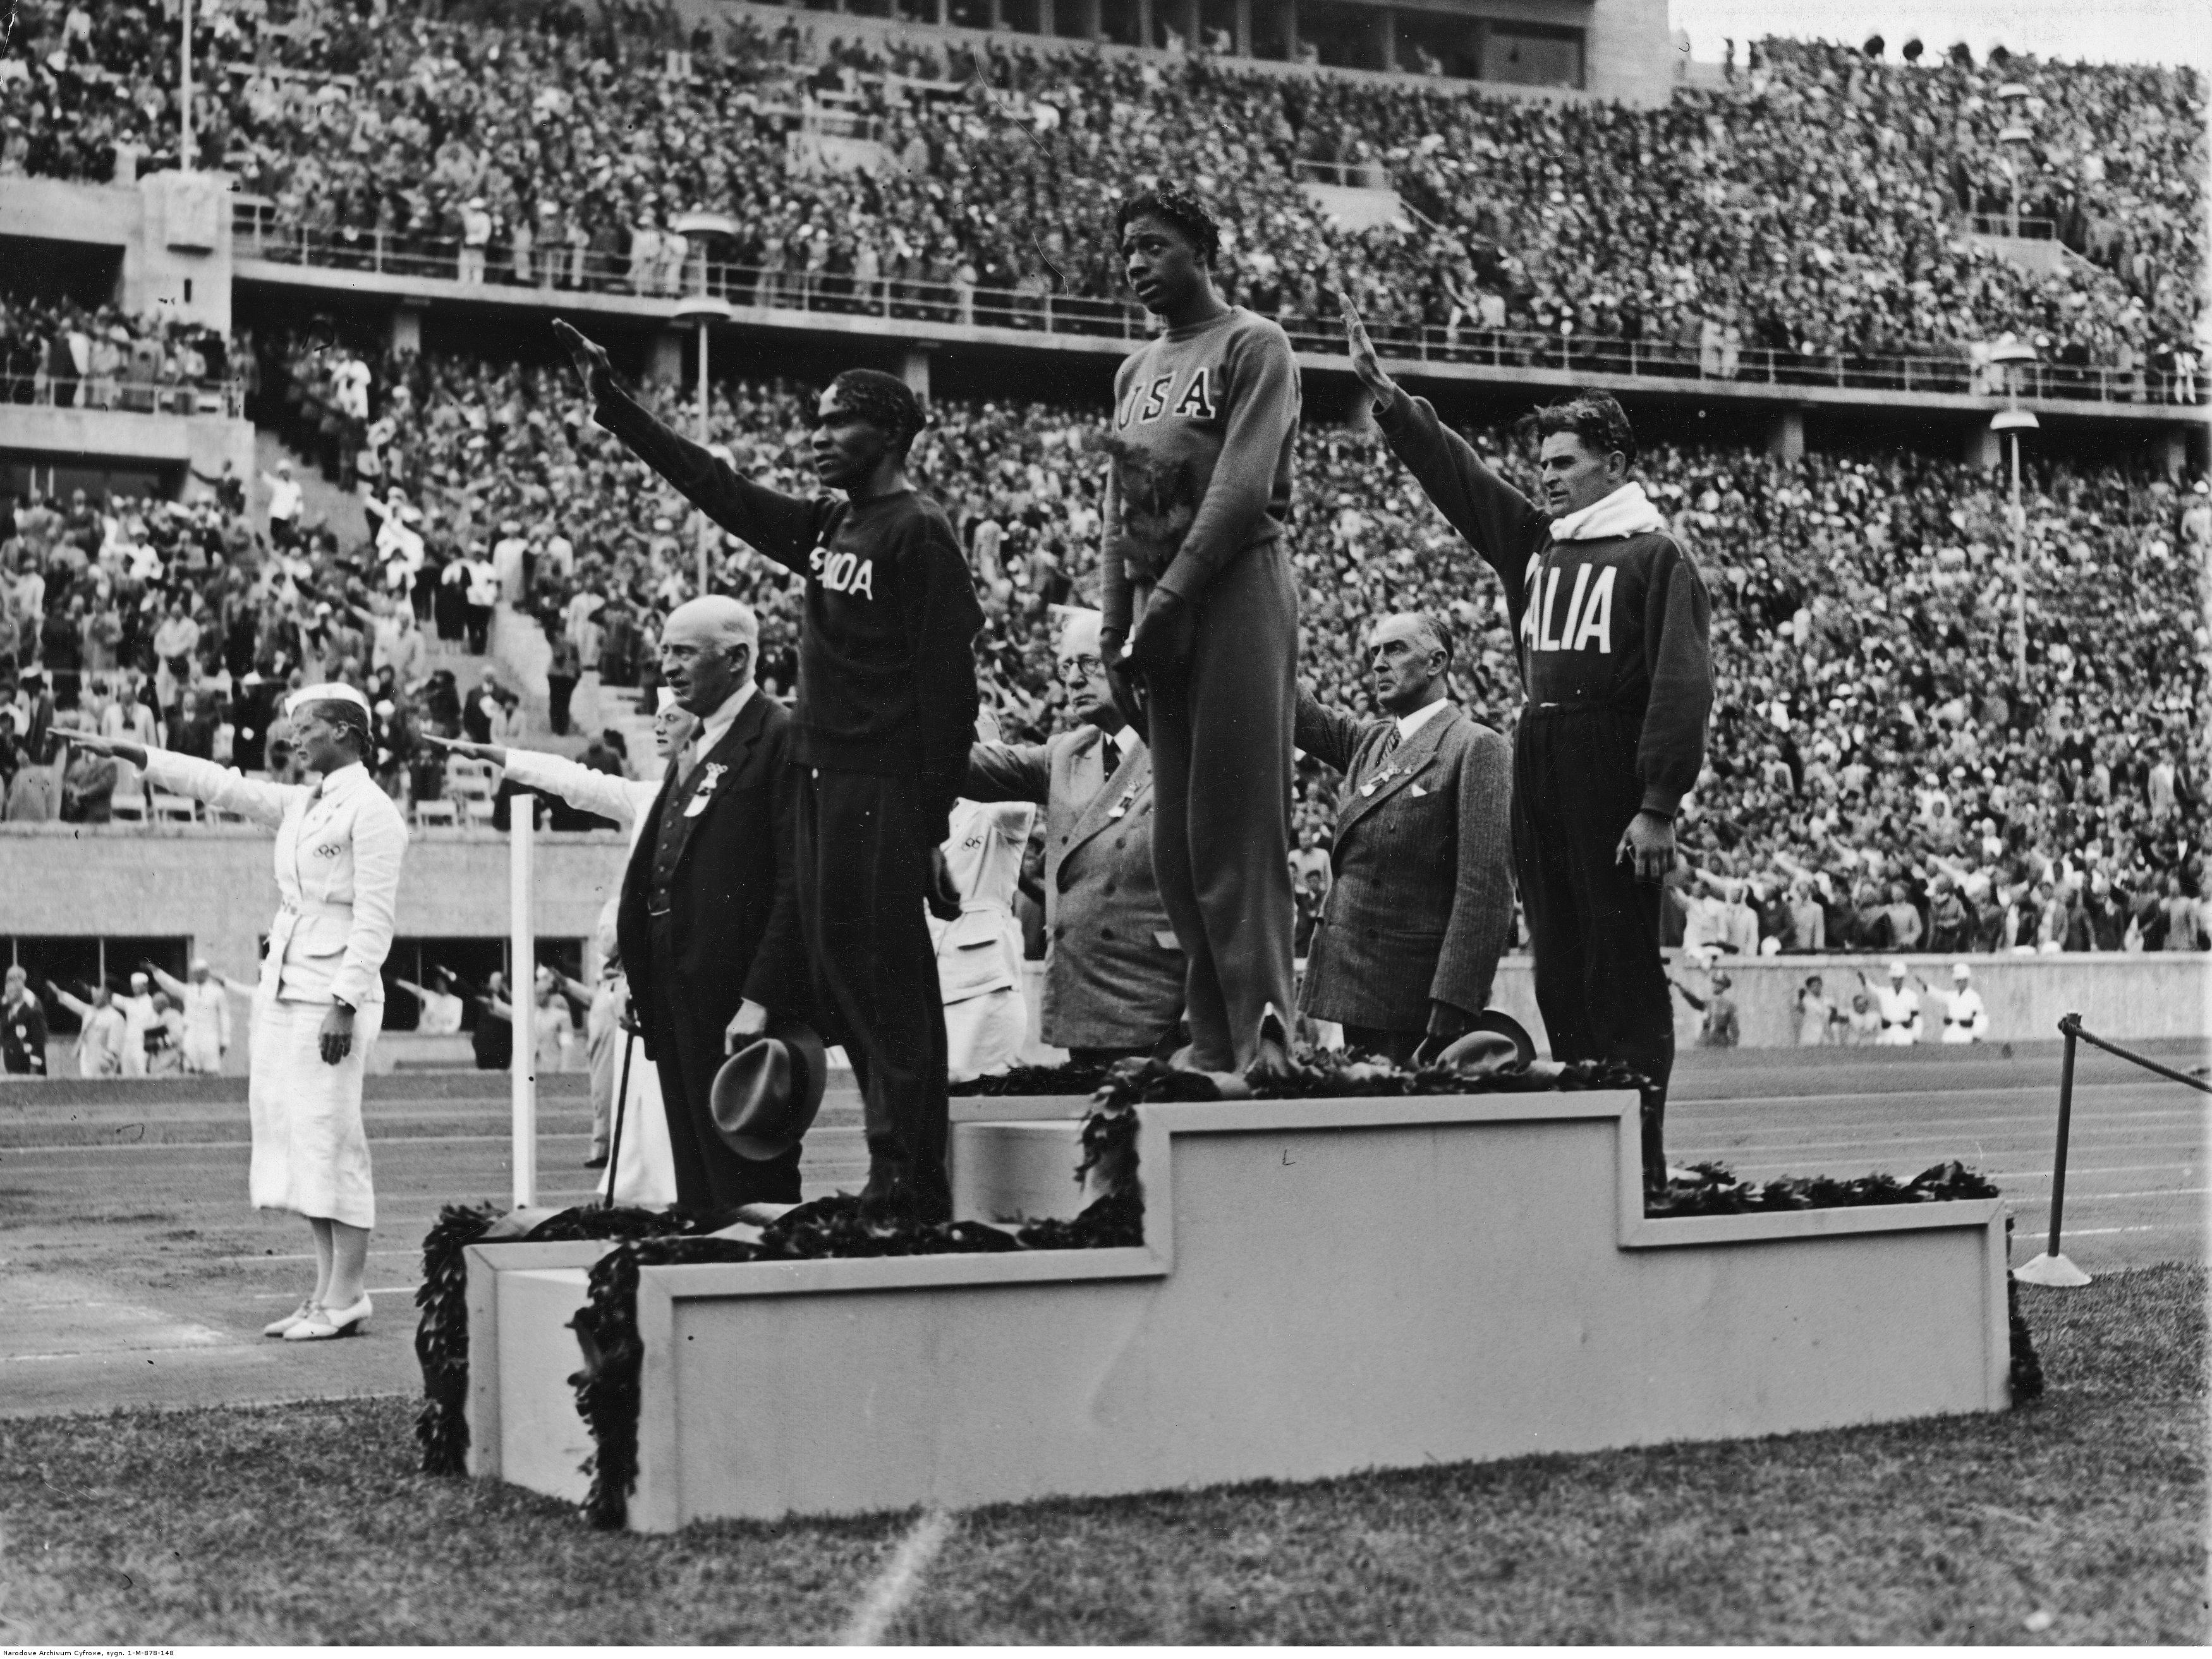 Kadr z igrzysk olimpijskich w Berlinie z 1936. Na lewym stopniu podium lekkoatleta Phil Edwards (1907-1971)